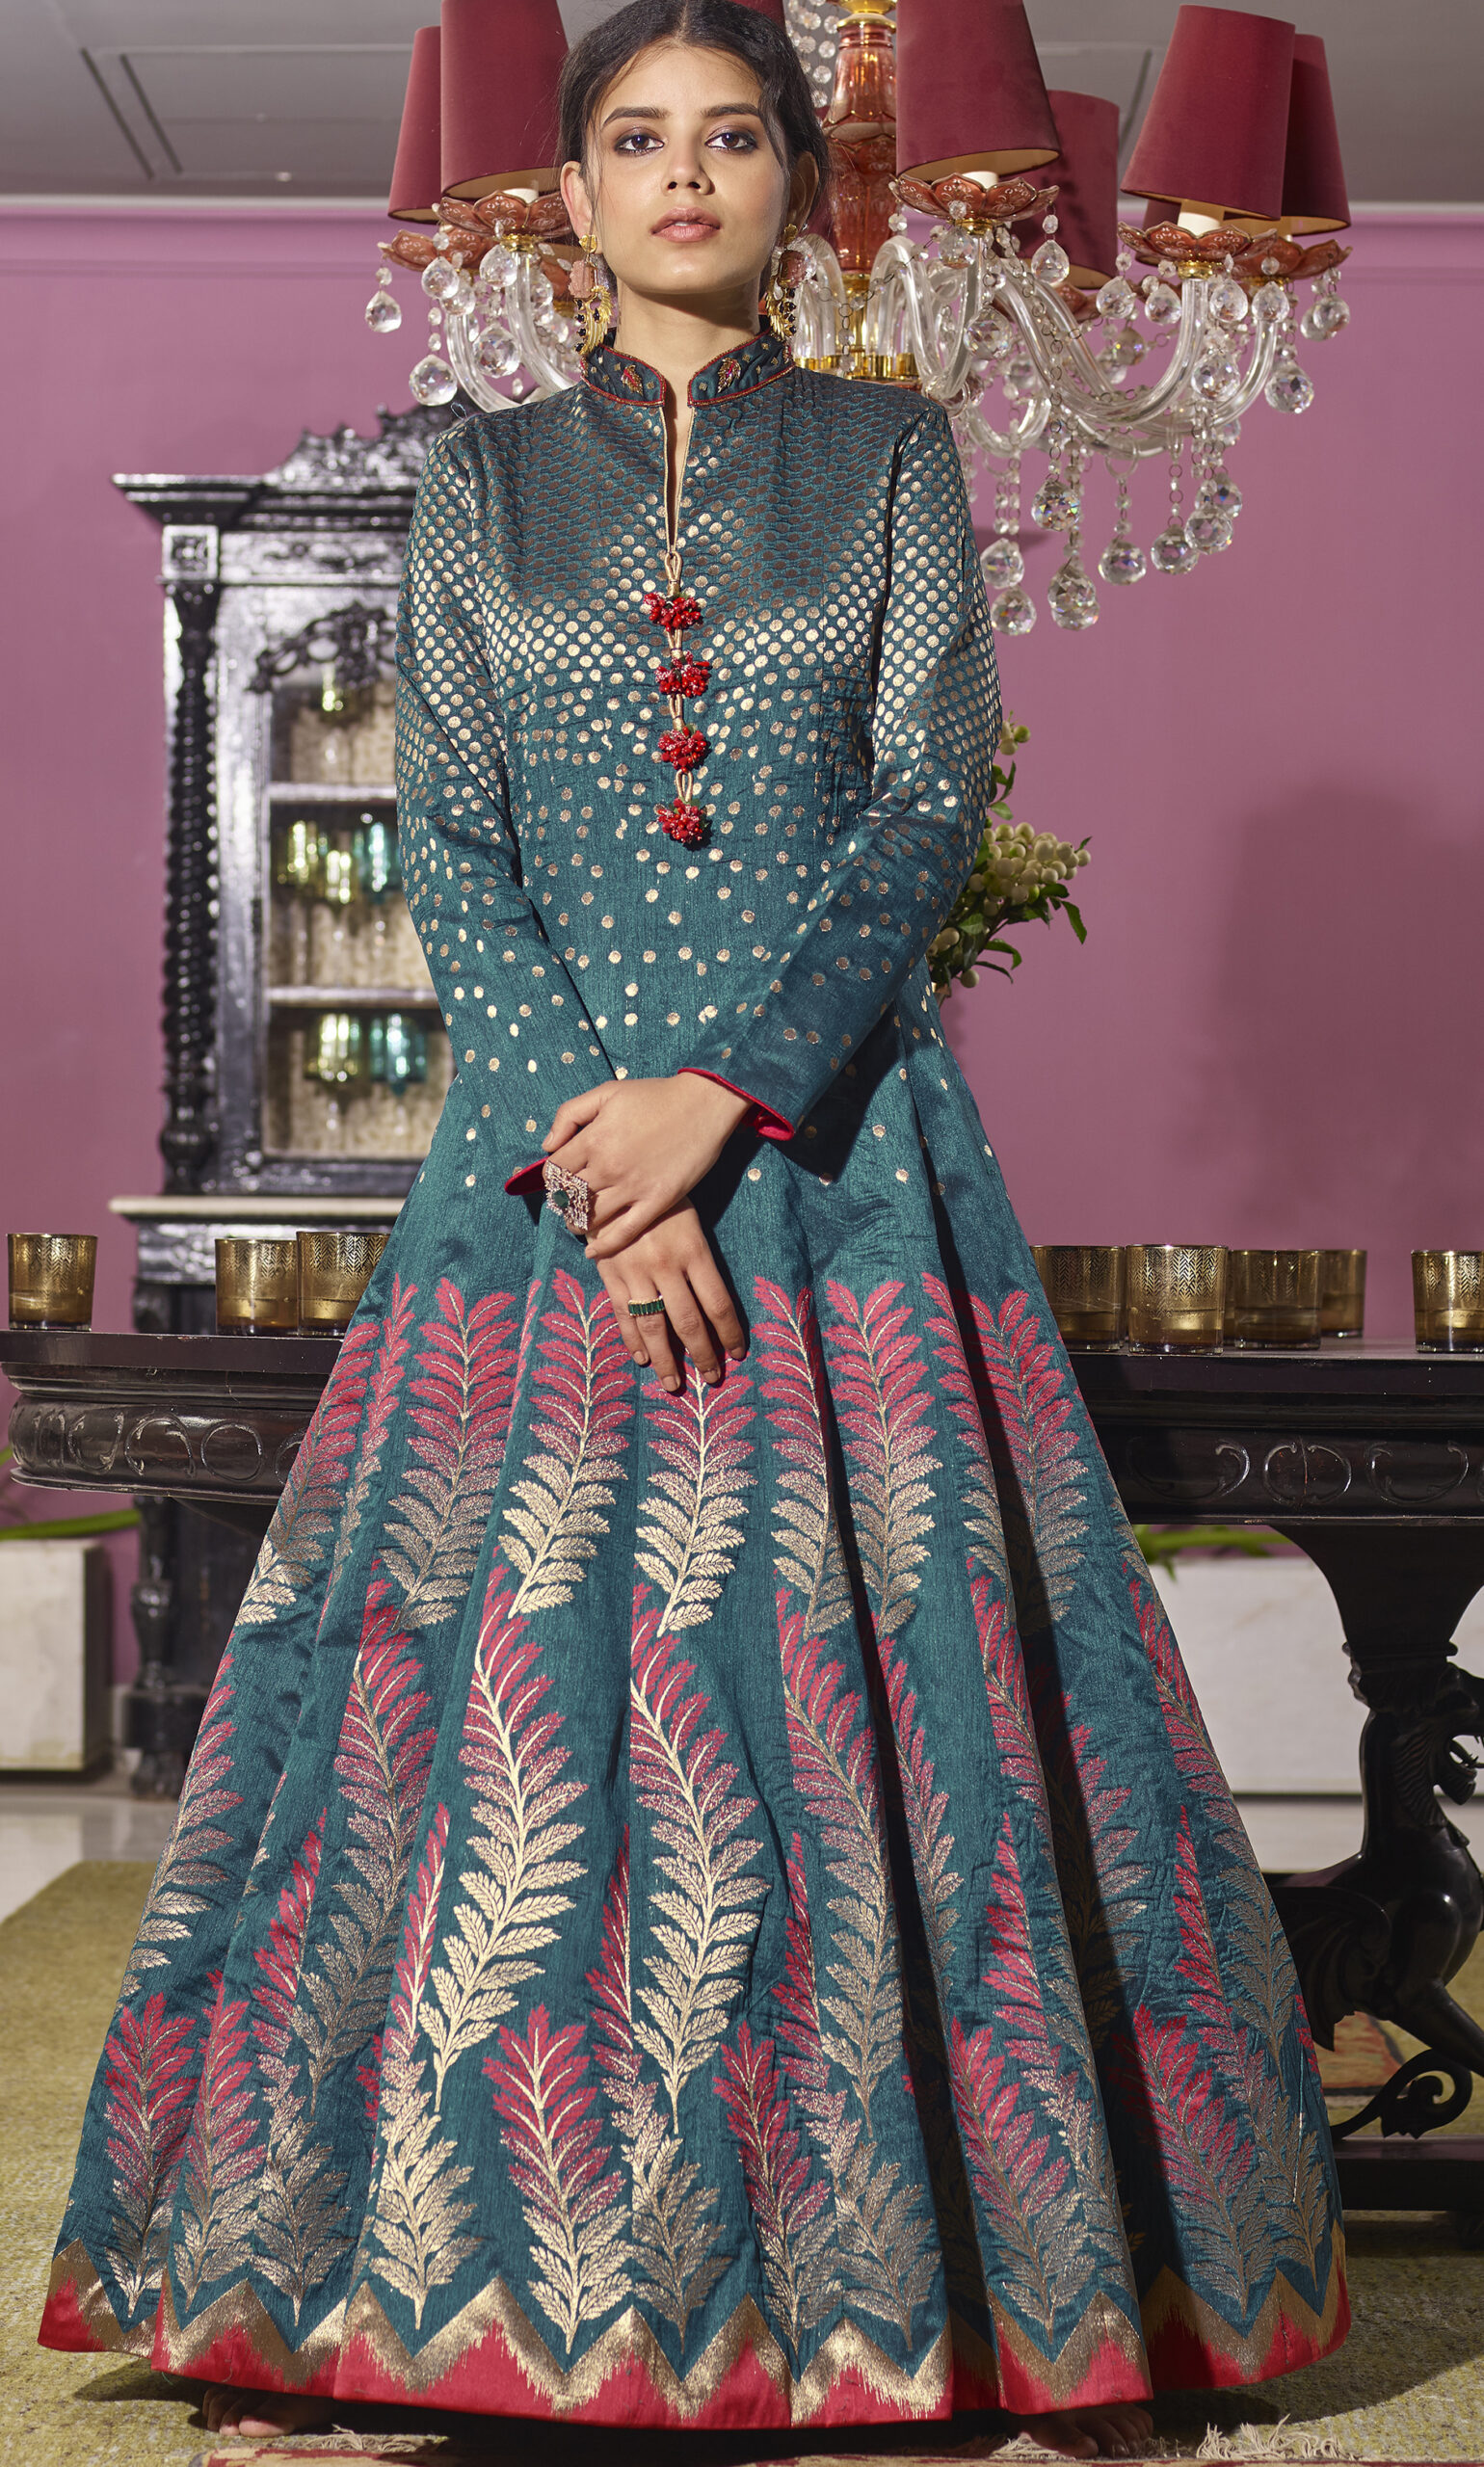 Buy Indian Wedding Dresses Online in USA | Cbazaar